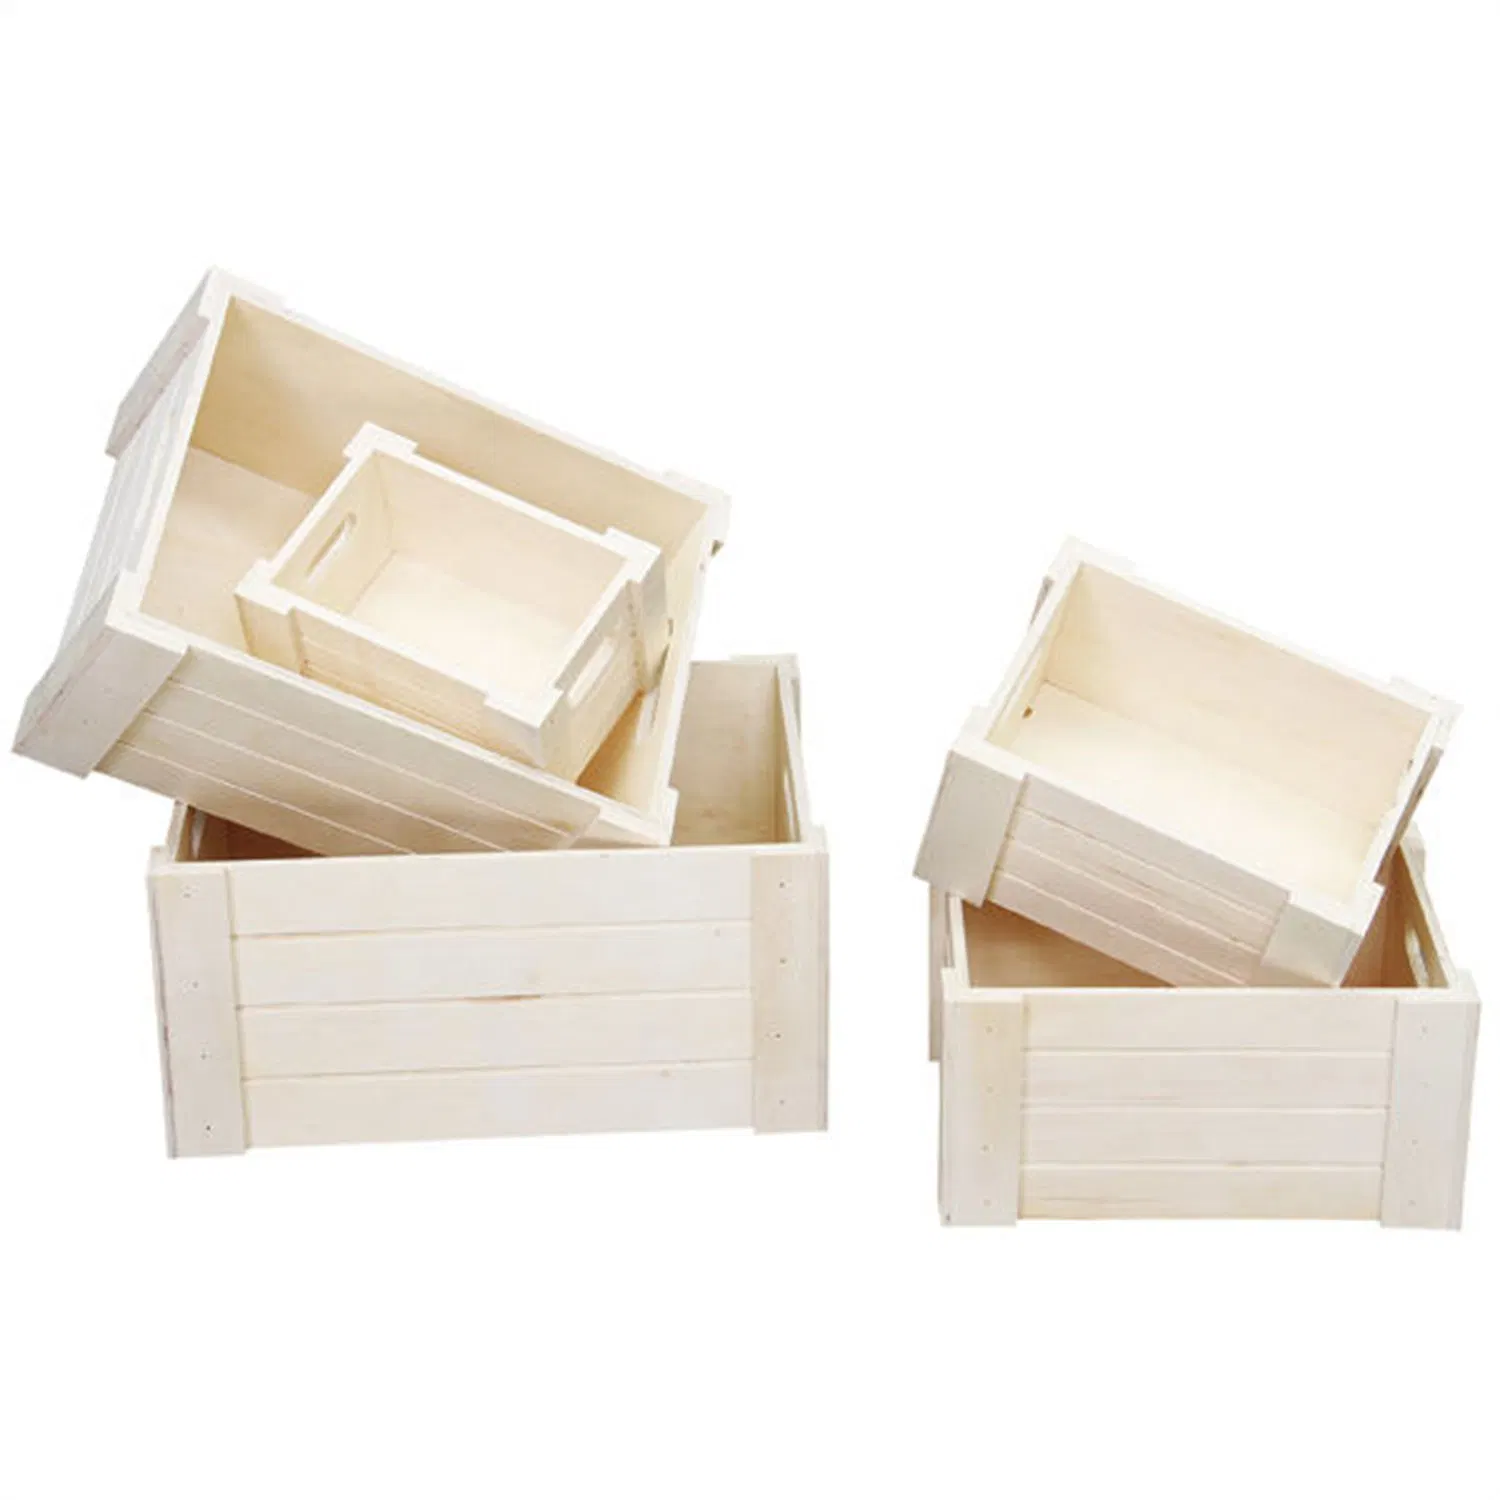 Handmade inachevé Boîte en bois non peintes avec couvercle à charnière pour l'Artisanat Bijoux de stockage de bricolage Boîte de pin ordinaire